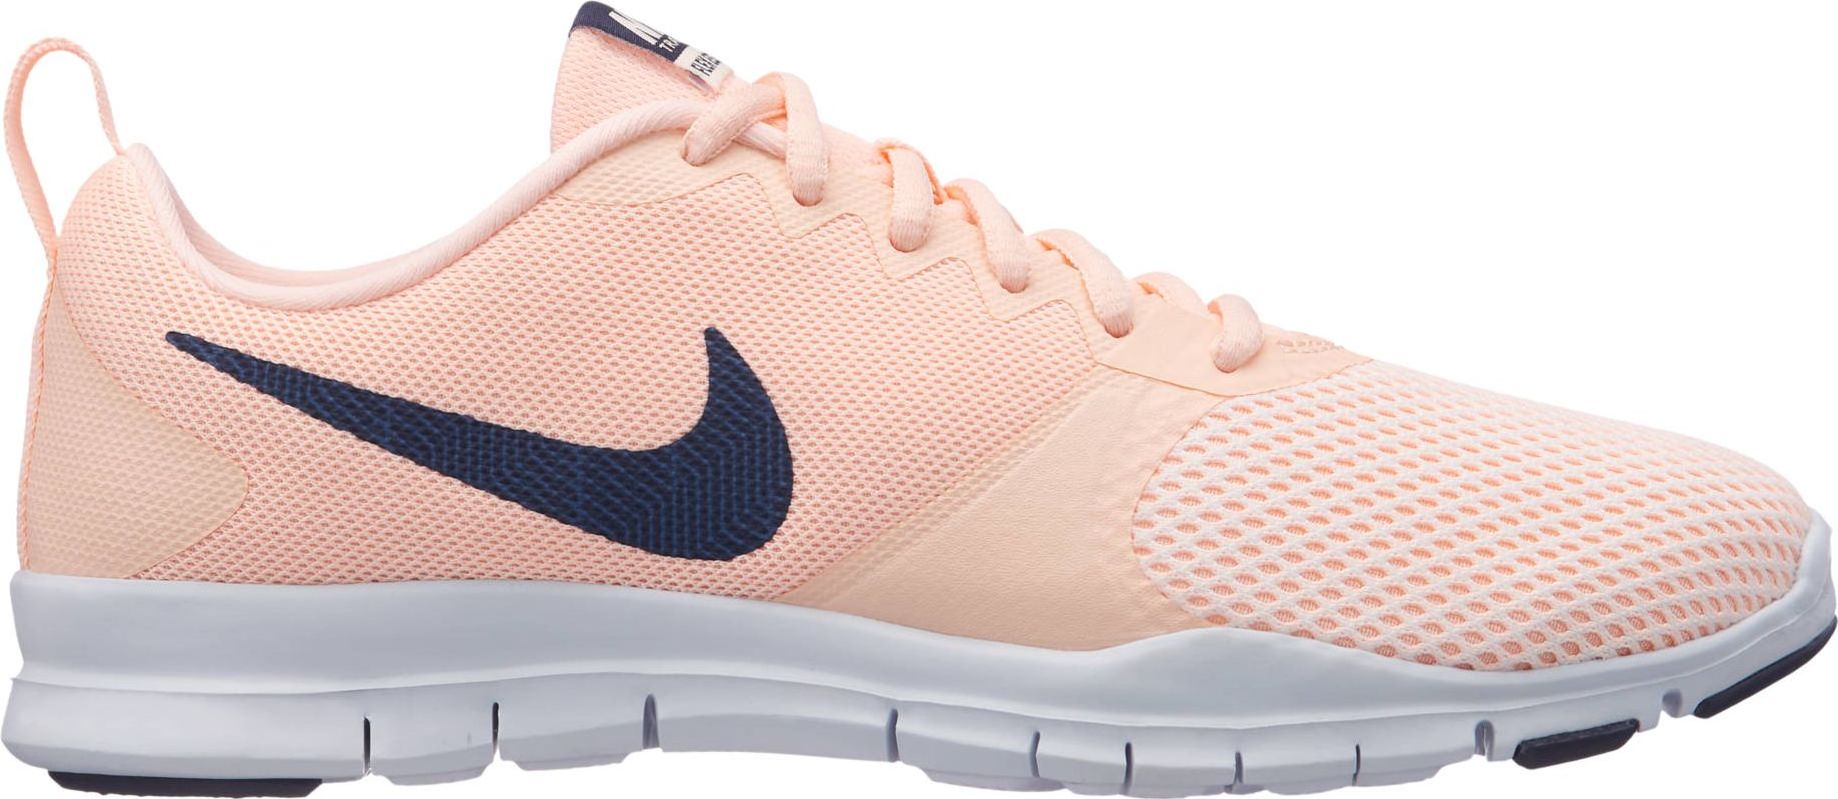 Кроссовки для фитнеса женские Nike Flex Essential, цвет: розовый. 924344-800. Размер 6 (35,5)